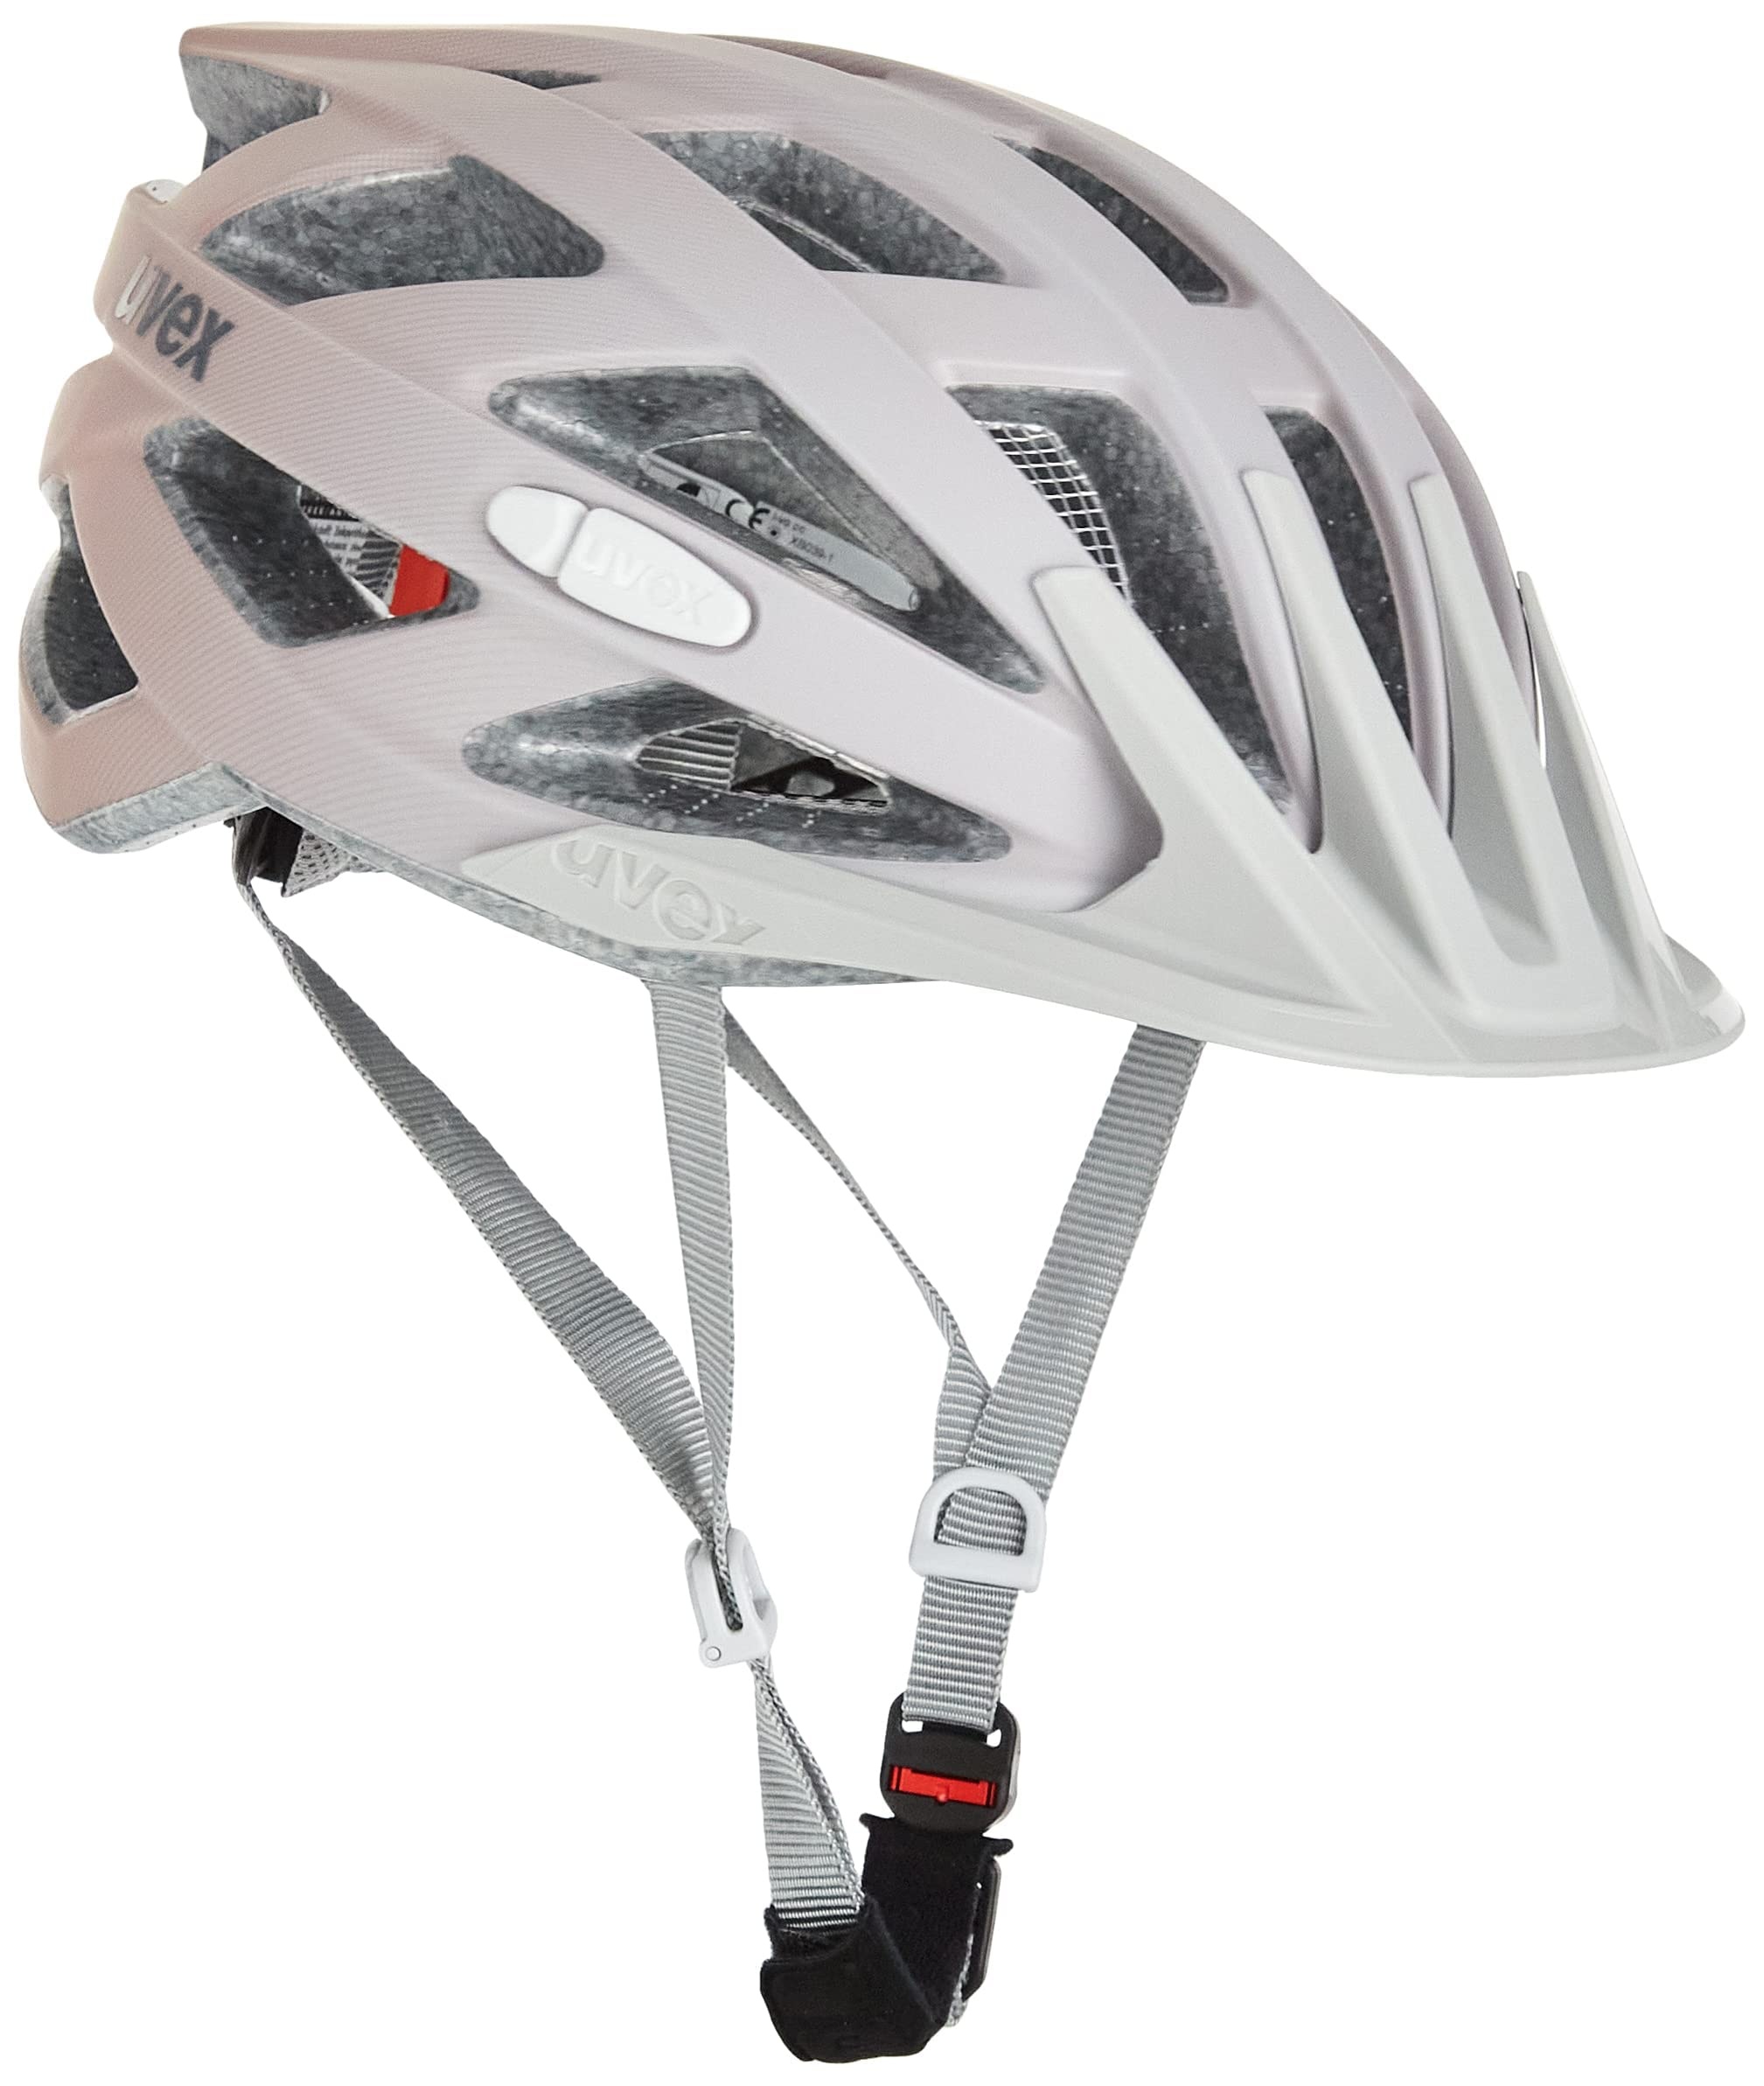 uvex i-vo cc - leichter Allround-Helm für Damen und Herren - individuelle Größenanpassung - erweiterbar mit LED-Licht - grey rose matt - 56-60 cm